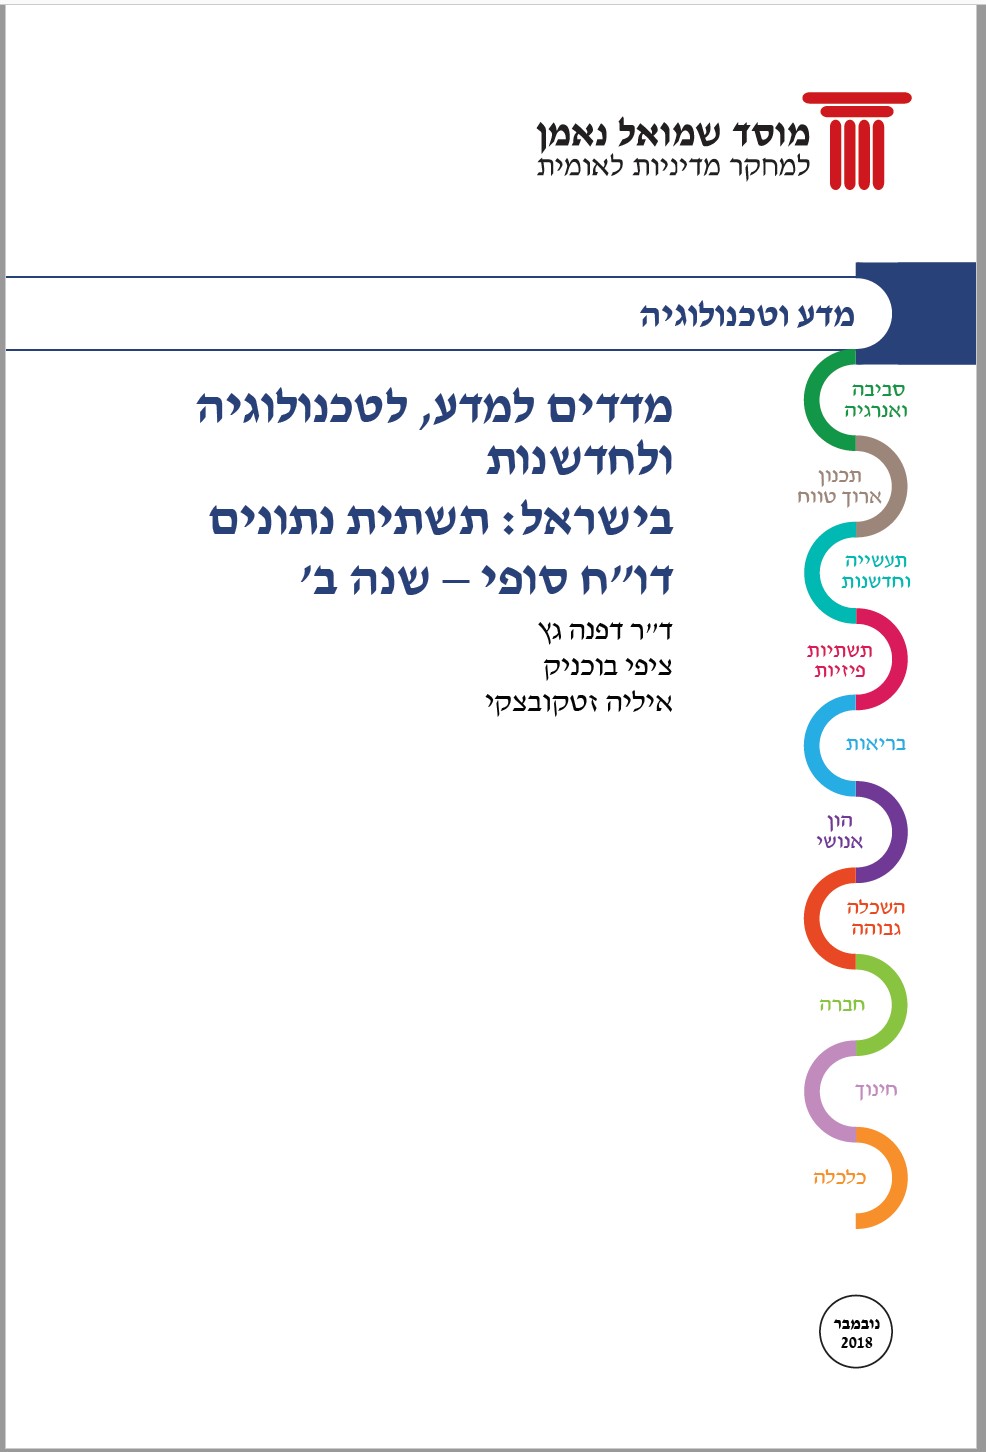 מדדים למדע, לטכנולוגיה ולחדשנות בישראל: תשתית נתונים השוואתית 